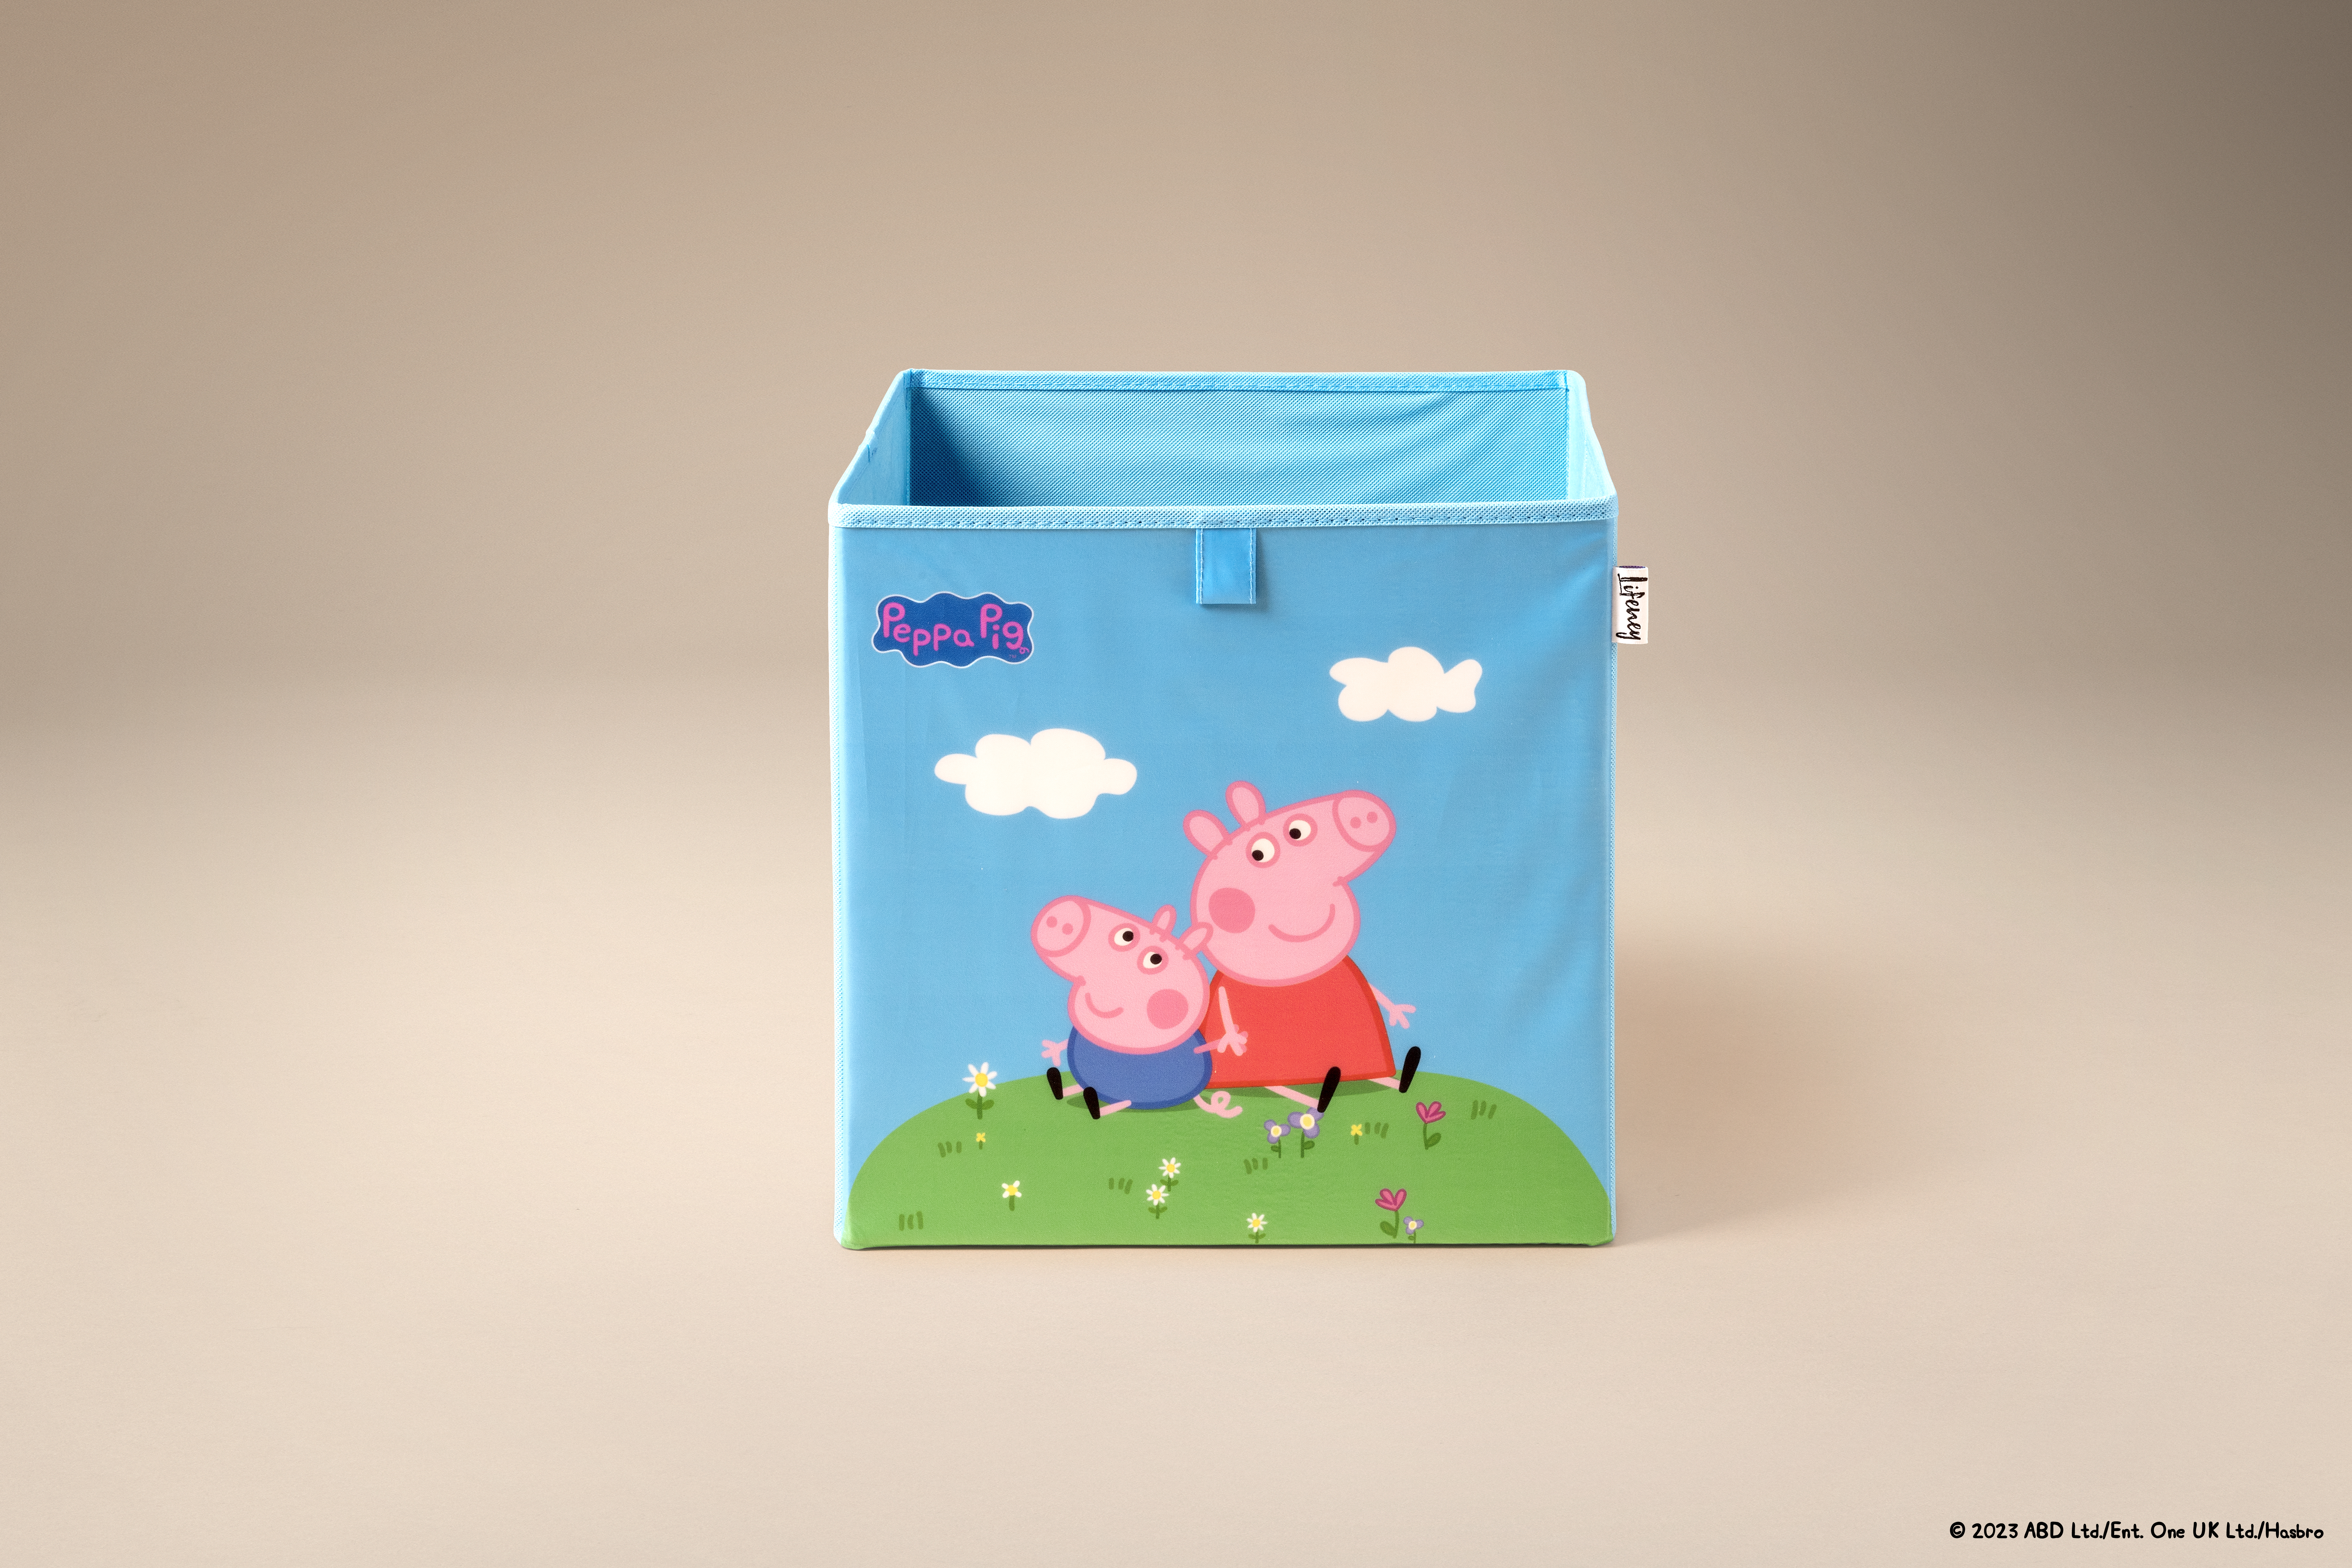  Aufbewahrungsbox Lifeney – Peppa y George sentados, caja de almacenamiento para niños, diseño de Peppa Pig, garantía de 5 años